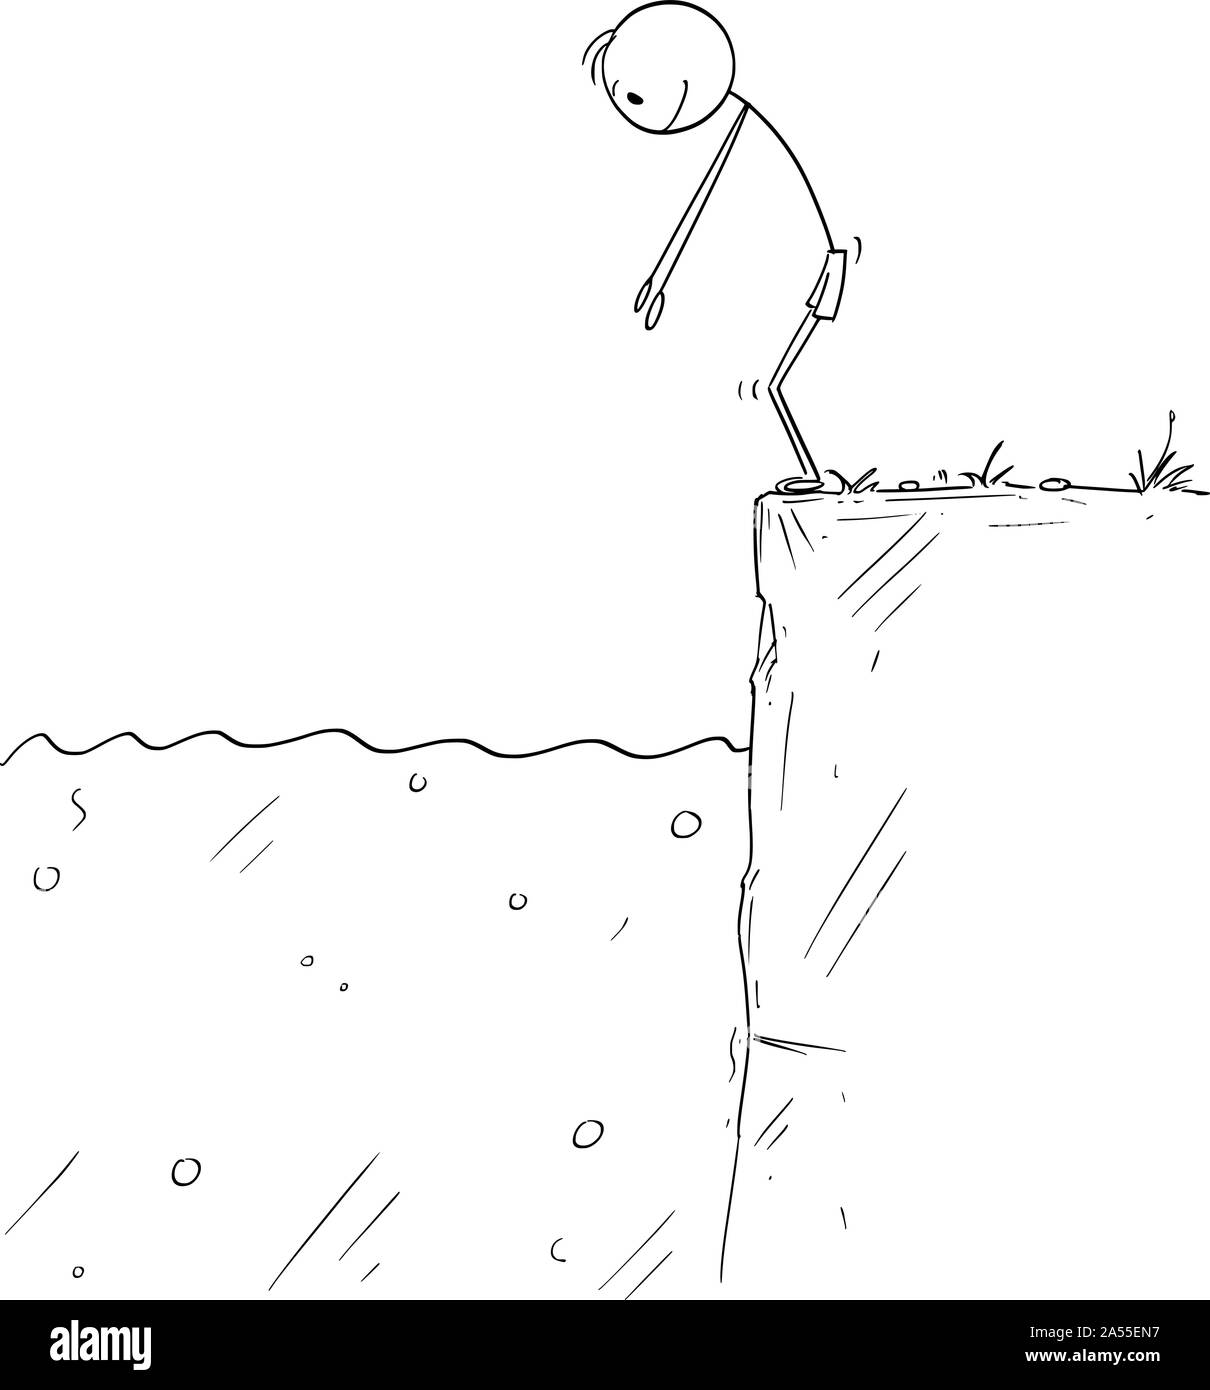 Cartoon vectores stick figura dibujo Ilustración conceptual del hombre o nadador listo para saltar al agua. Ilustración del Vector